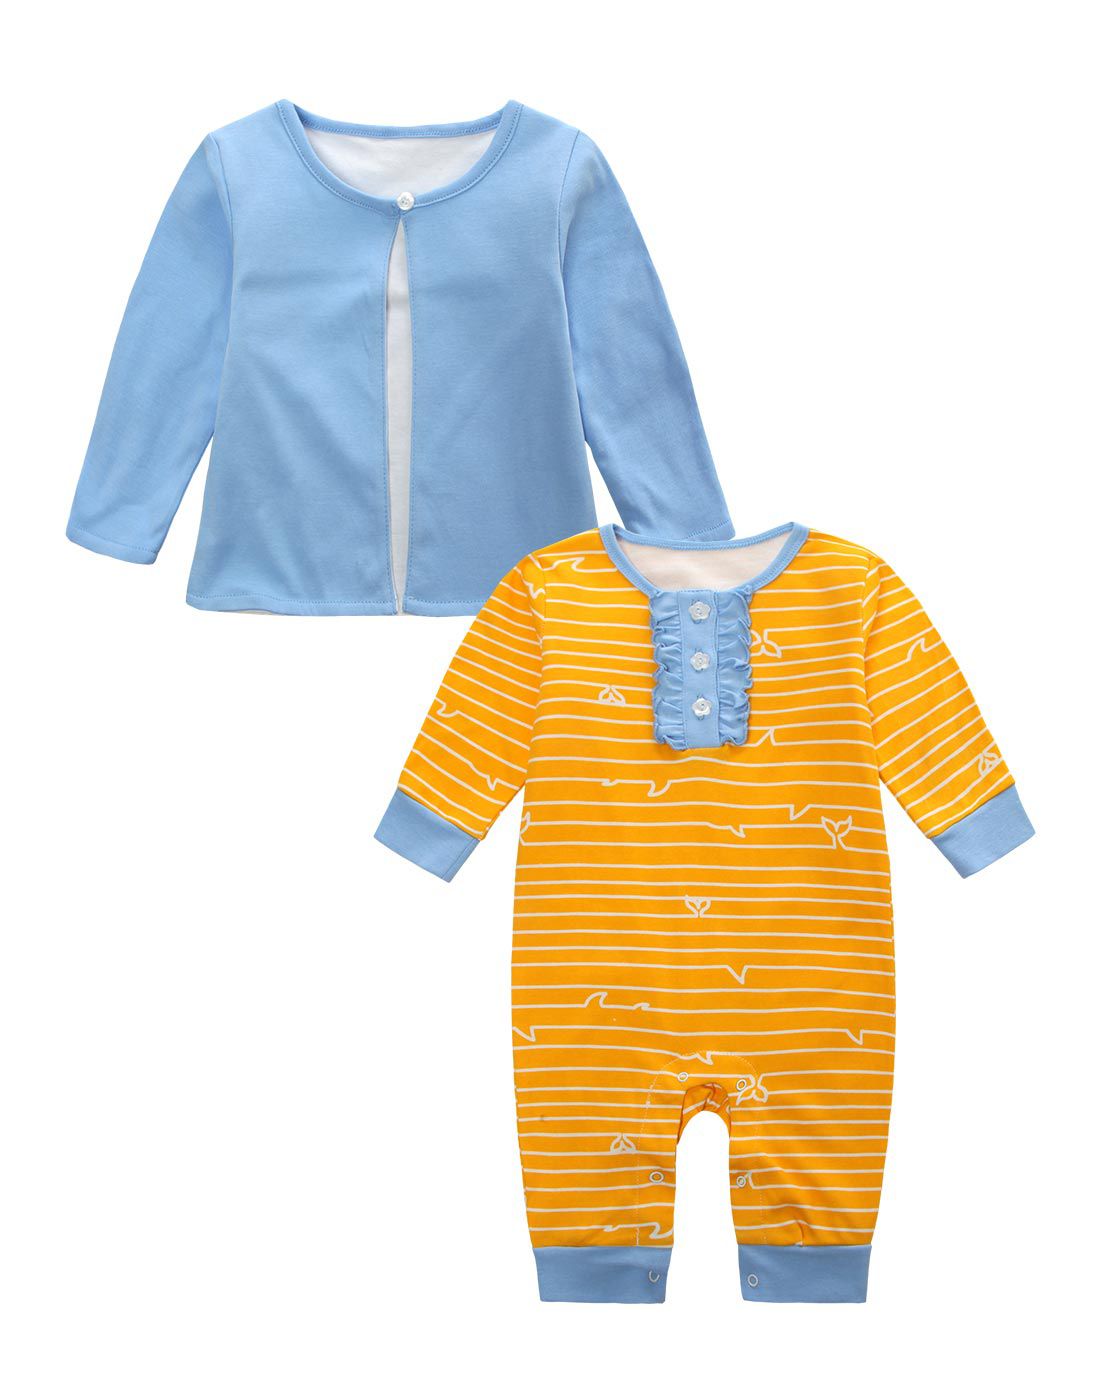 婴幼儿服装代理_婴幼儿服装代理_婴幼儿服装代理